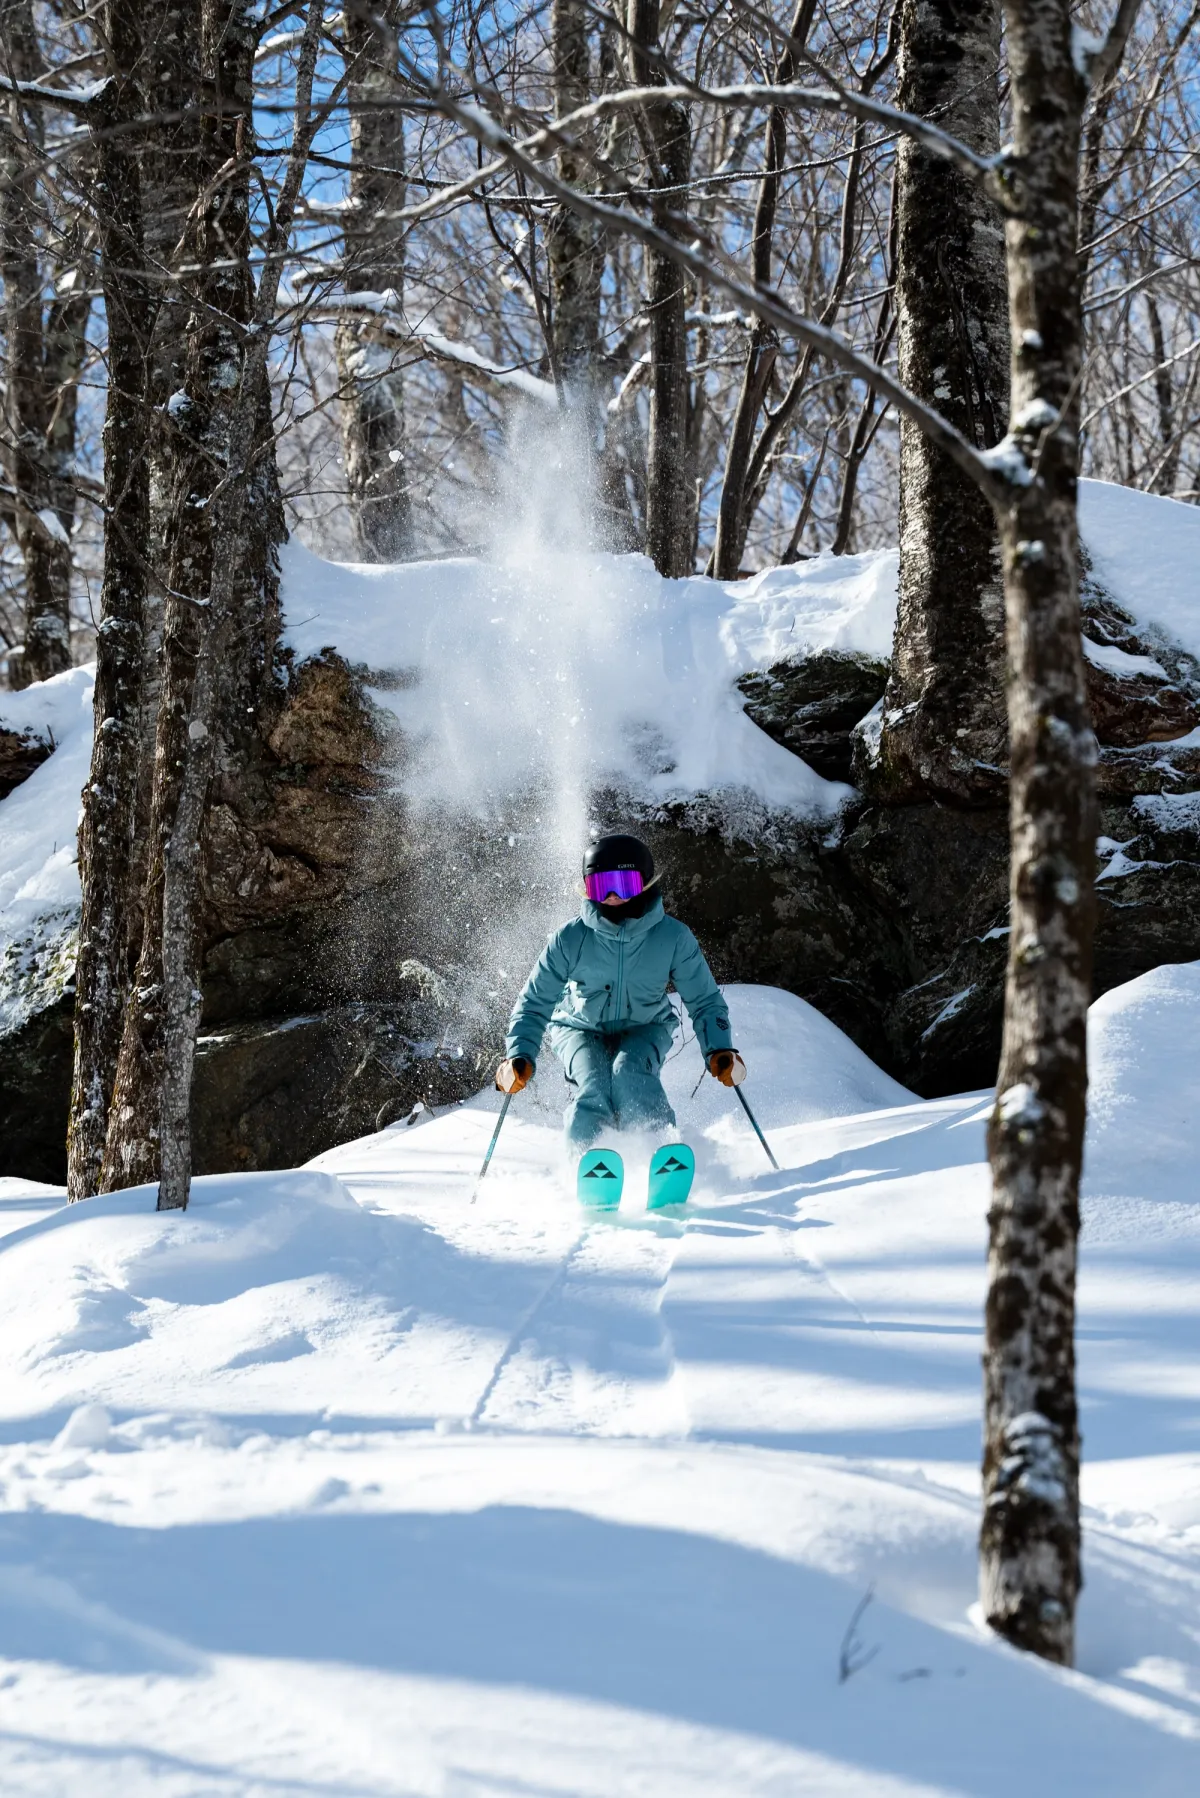 Quelle actioncam choisir pour les sports d'hiver et le ski en 2024? -  studioSPORT